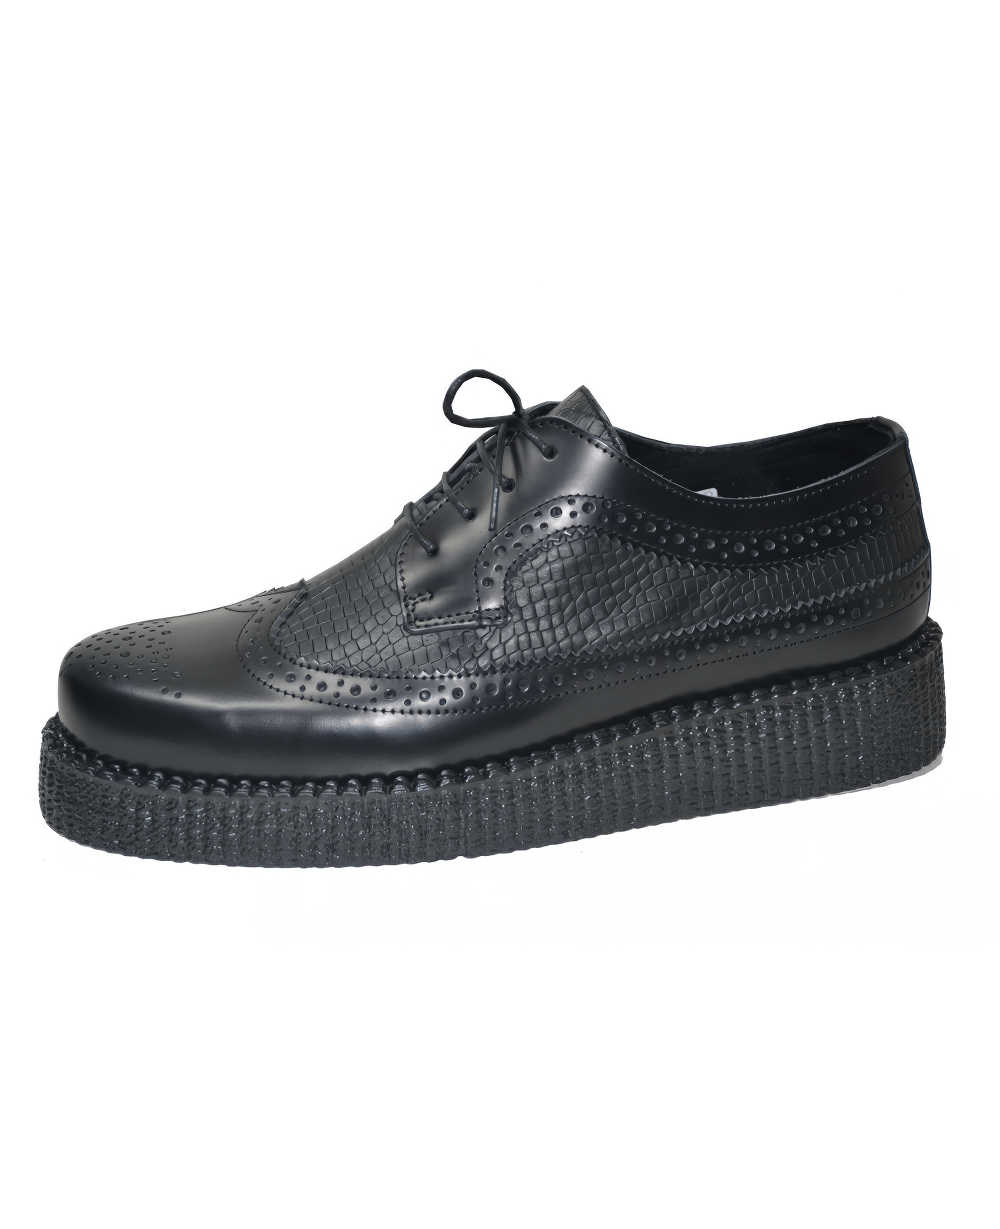 Chaussures Derby unisexes noires à lacets en cuir avec semelle en caoutchouc